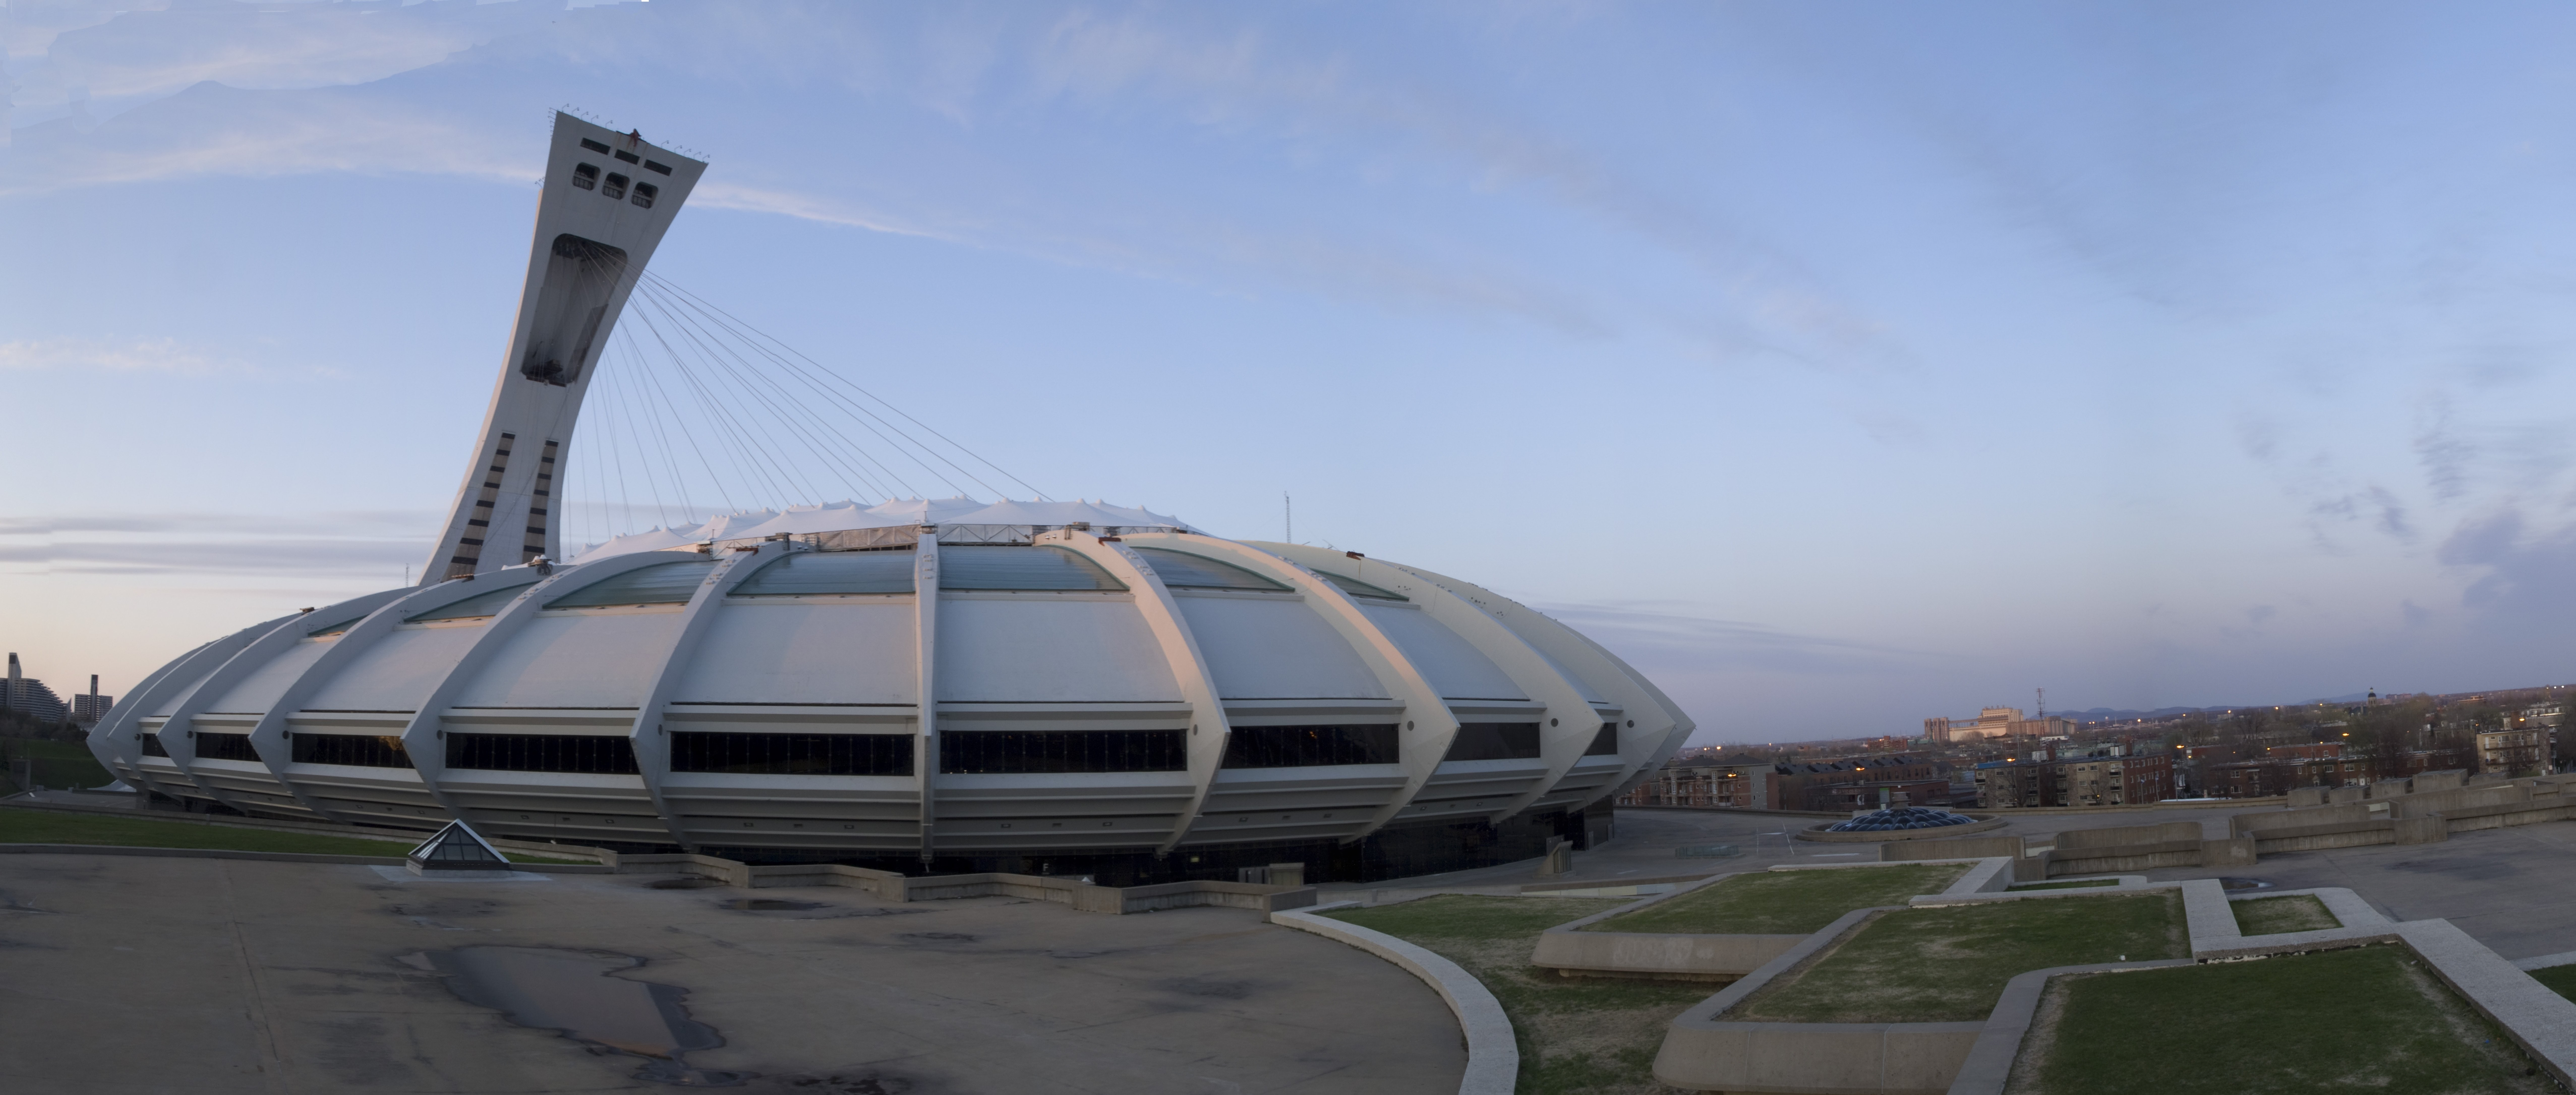 Fotos de Estadio Olímpico de Quebec